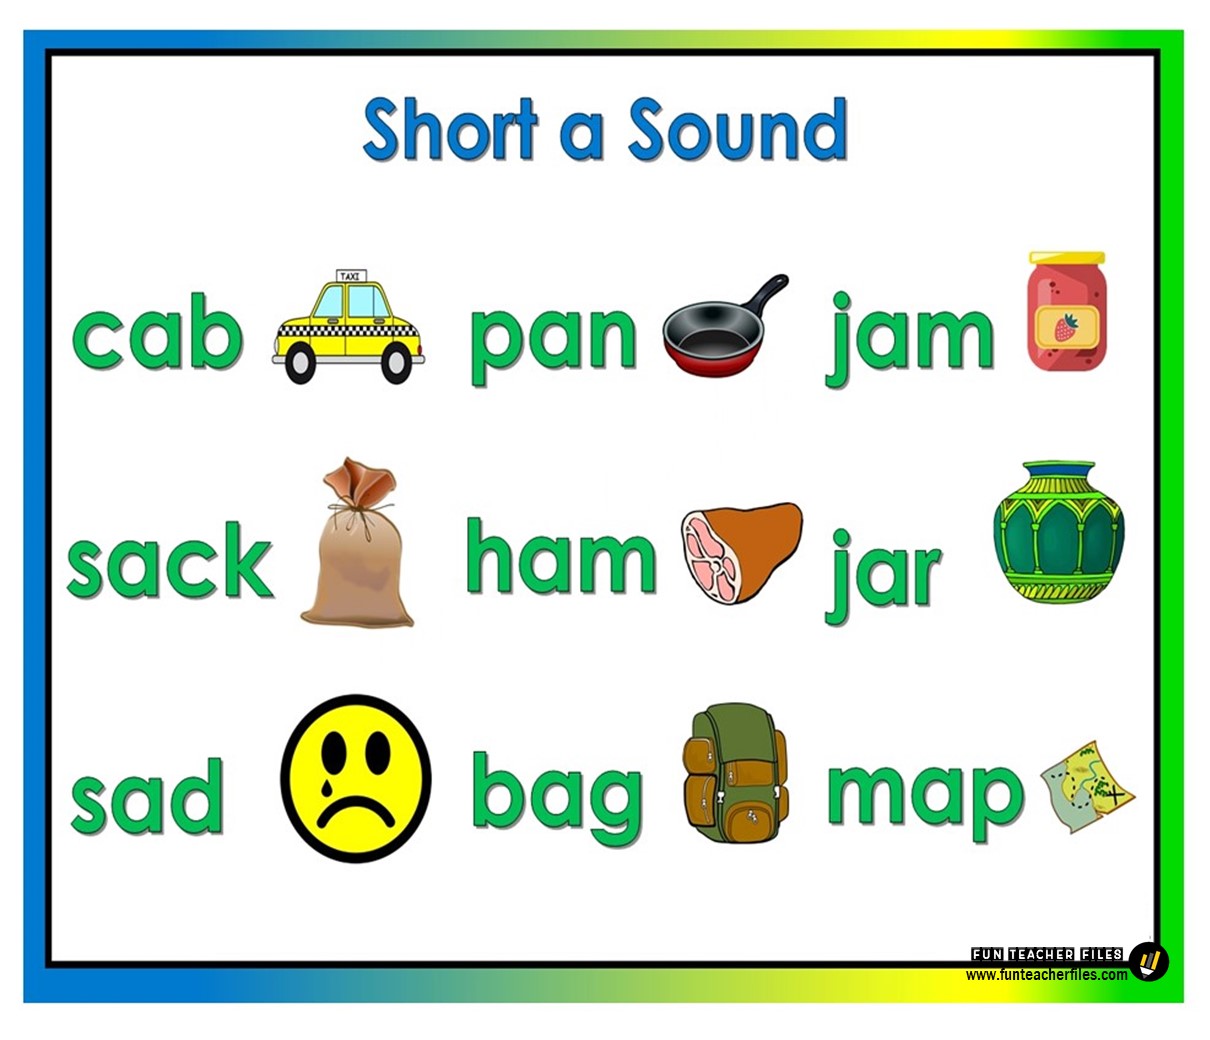 short vowel sounds list